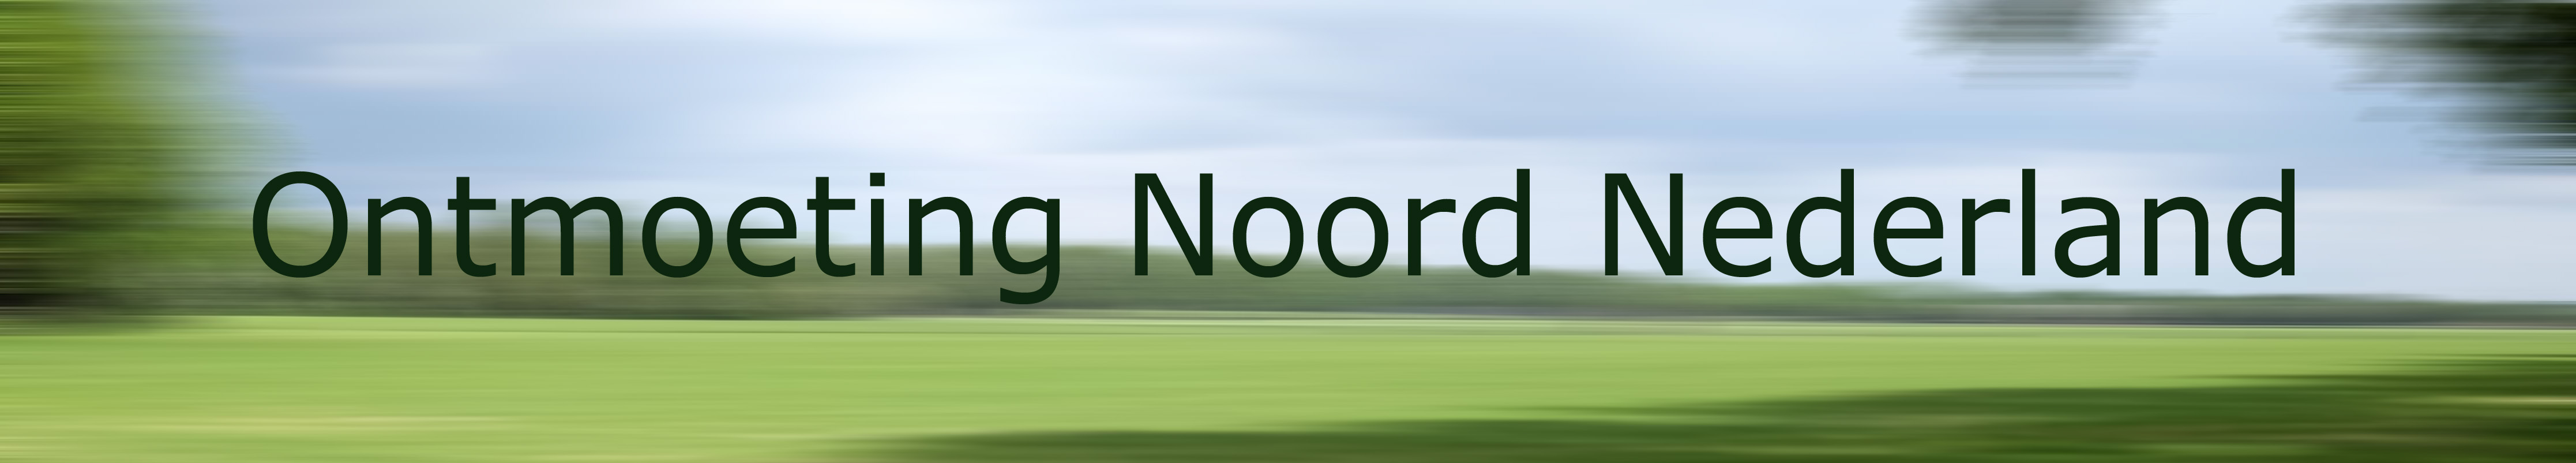 462 20160515 029 banner Noord Nederland